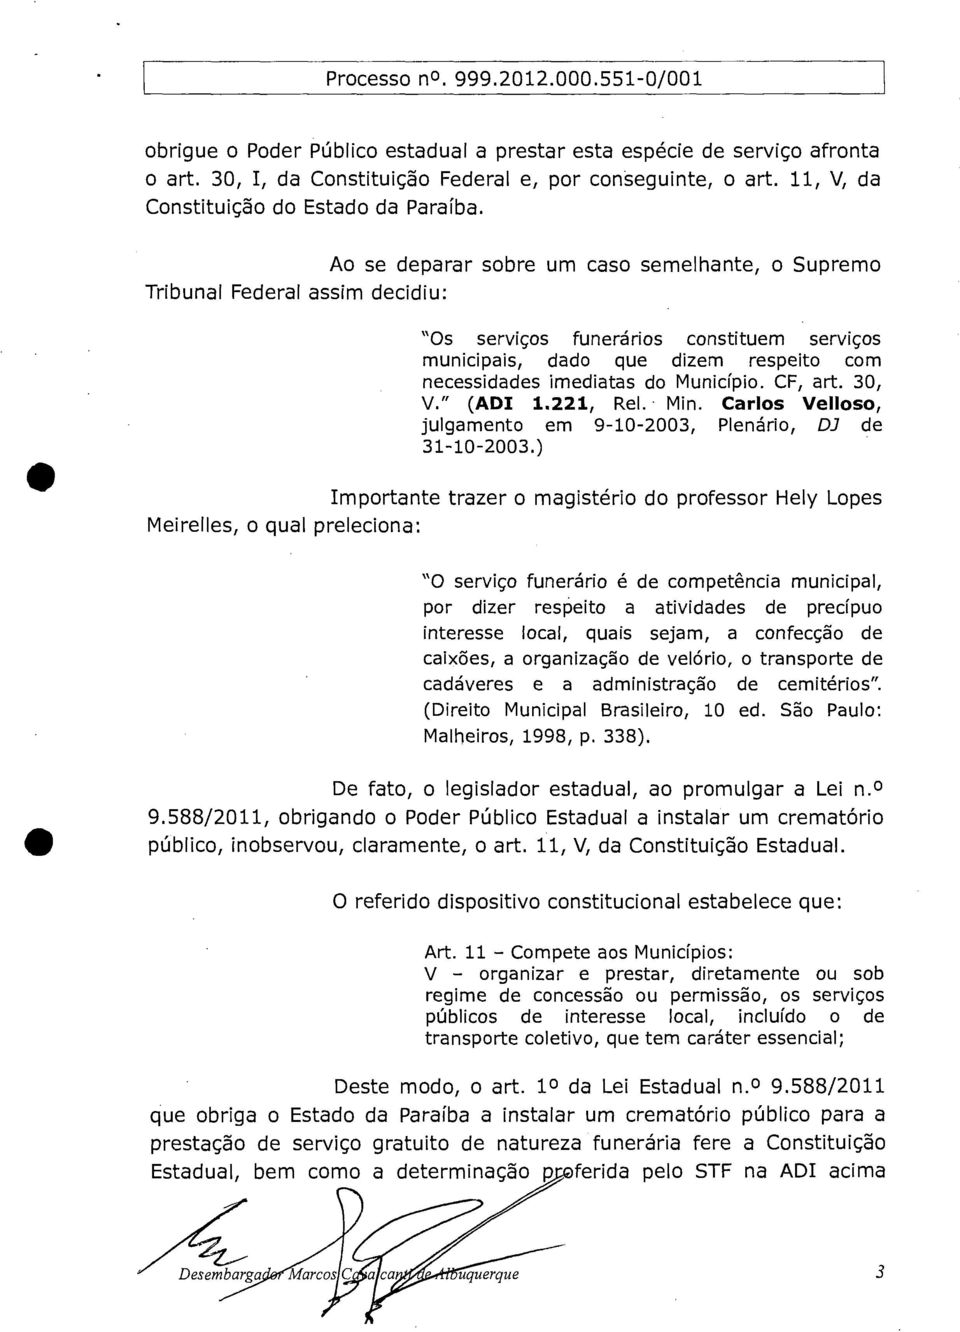 Município. CF, art. 30, V." (ADI 1.221, Rel. Min. Carlos Velloso, julgamento em 9-10-2003, Plenário, D3 de 31-10-2003.